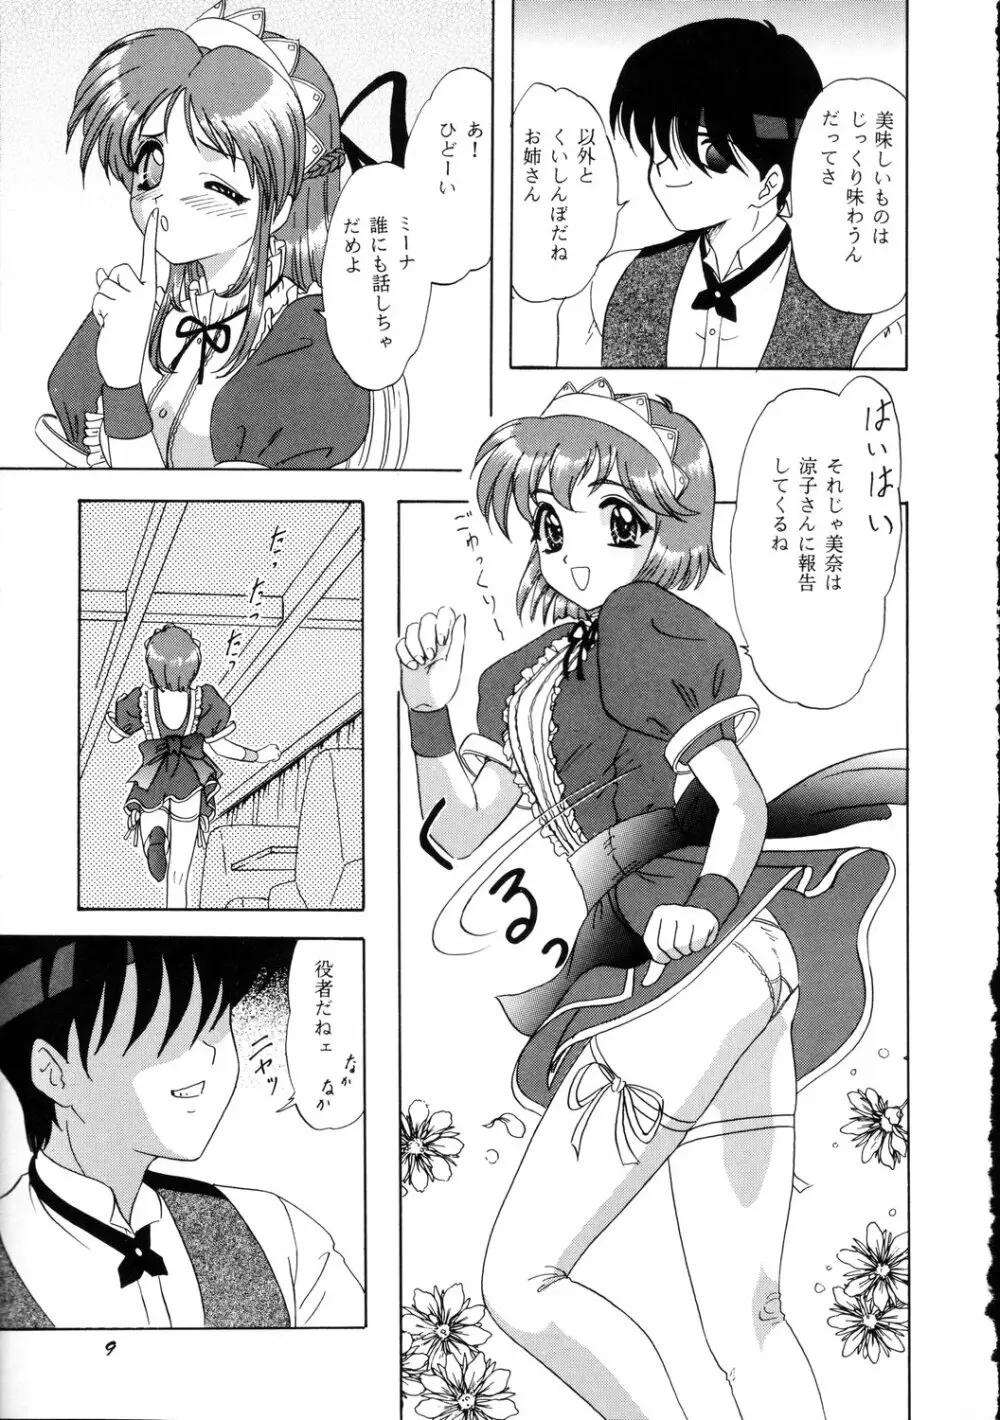 LUNCH BOX 36 - にんじんフルコース - page8